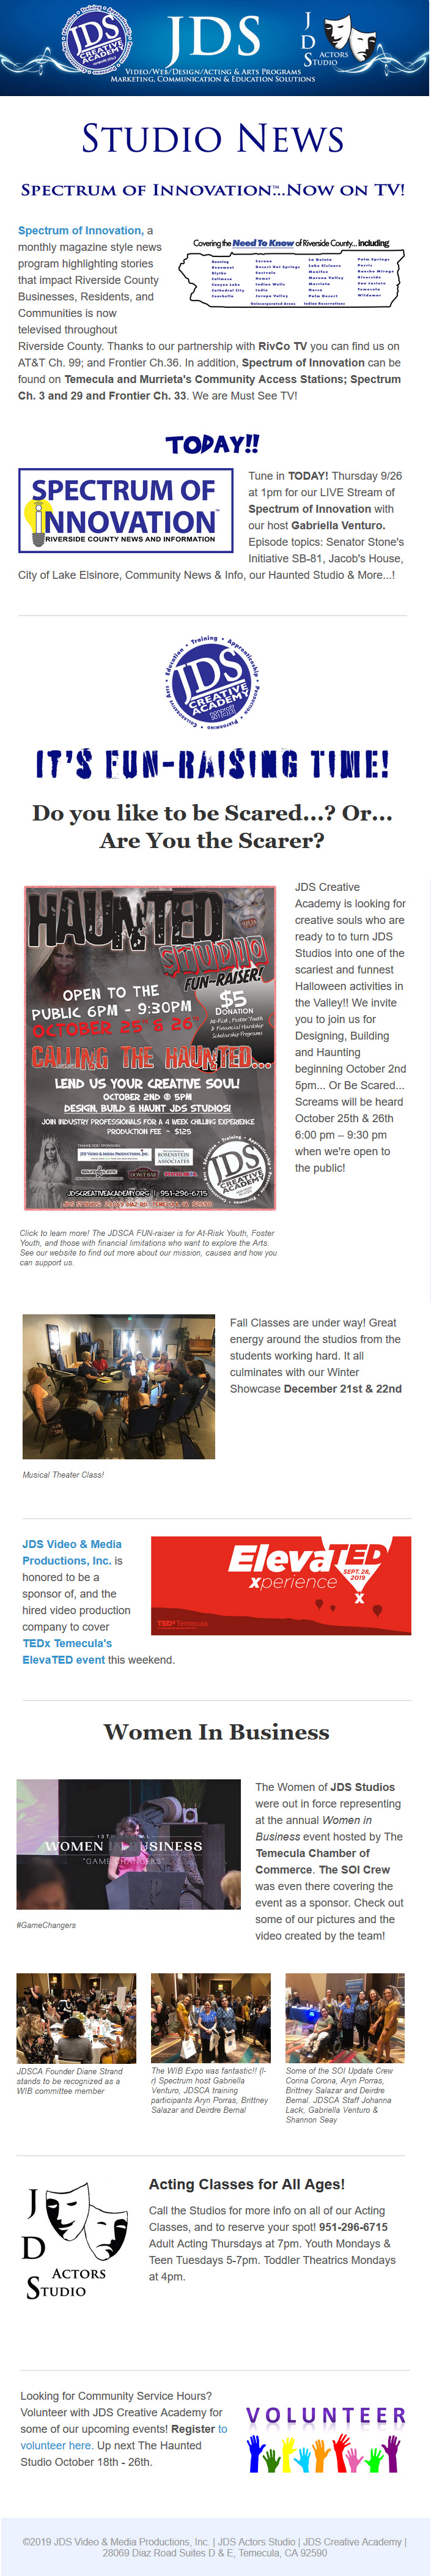 JDS Studio News